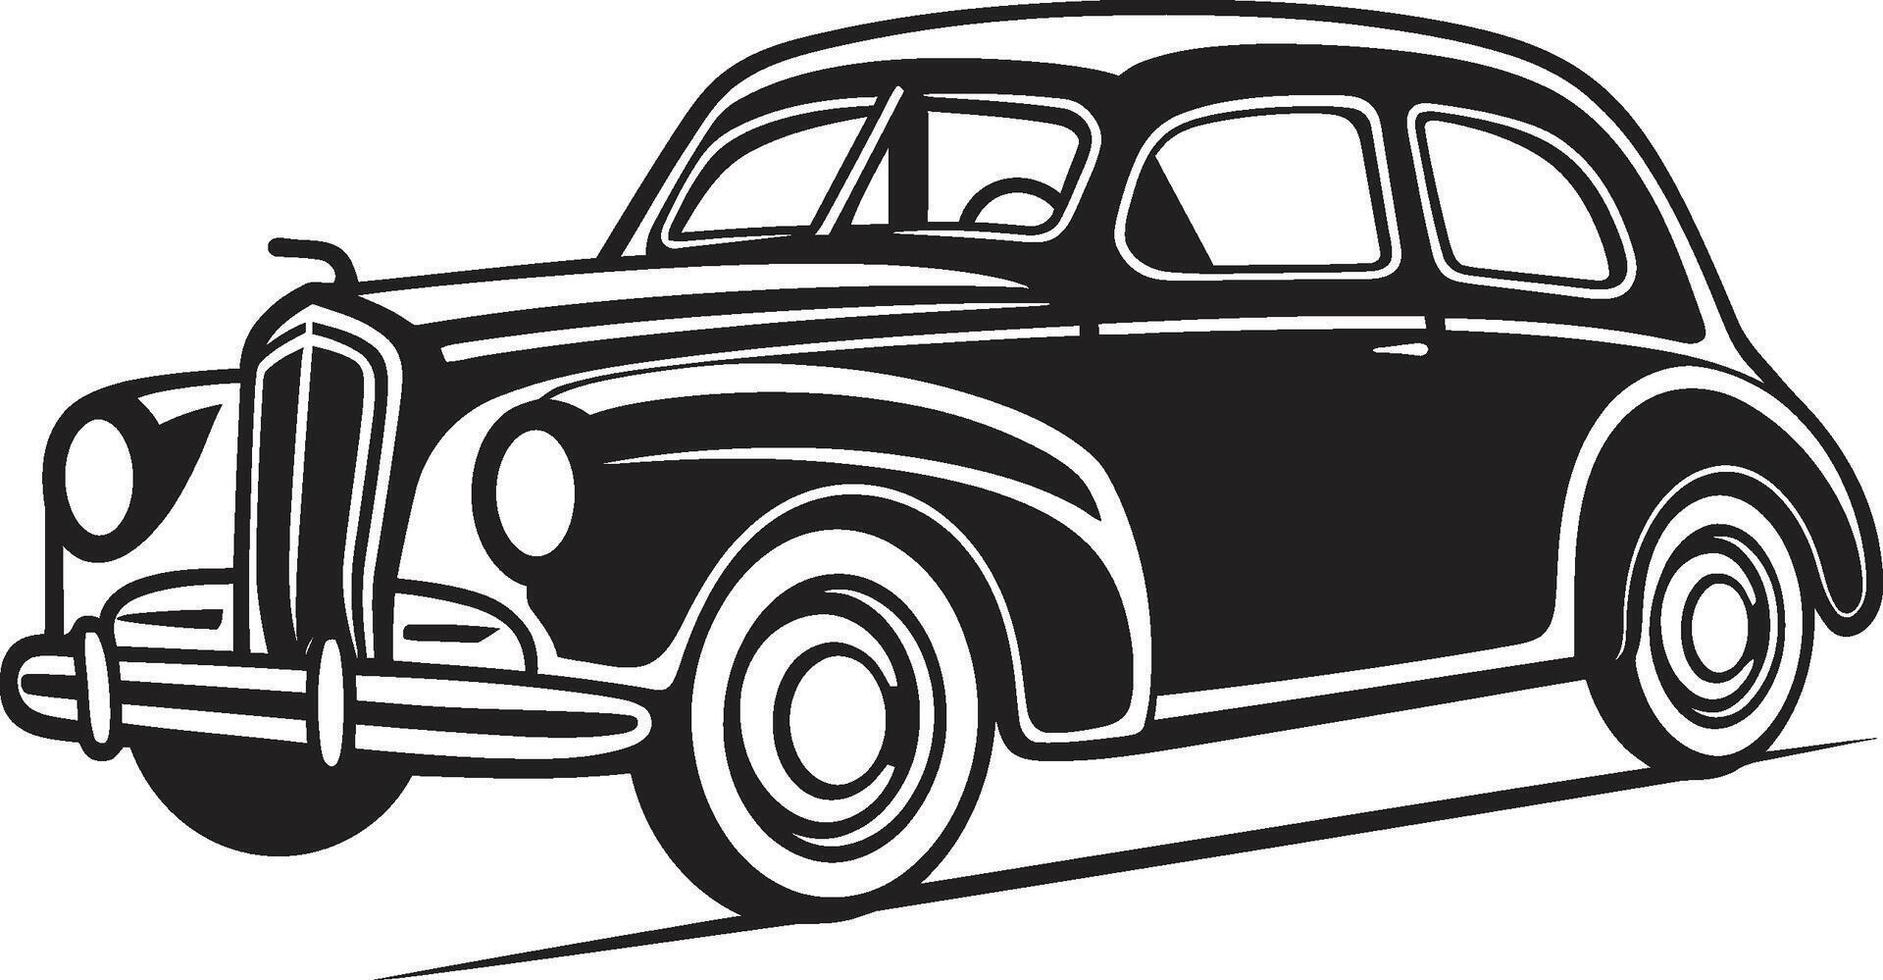 Nostalgie Navigator Emblem zum Gekritzel Linie Kunst künstlerisch autowerkstatt ic Element von Antiquität Auto vektor